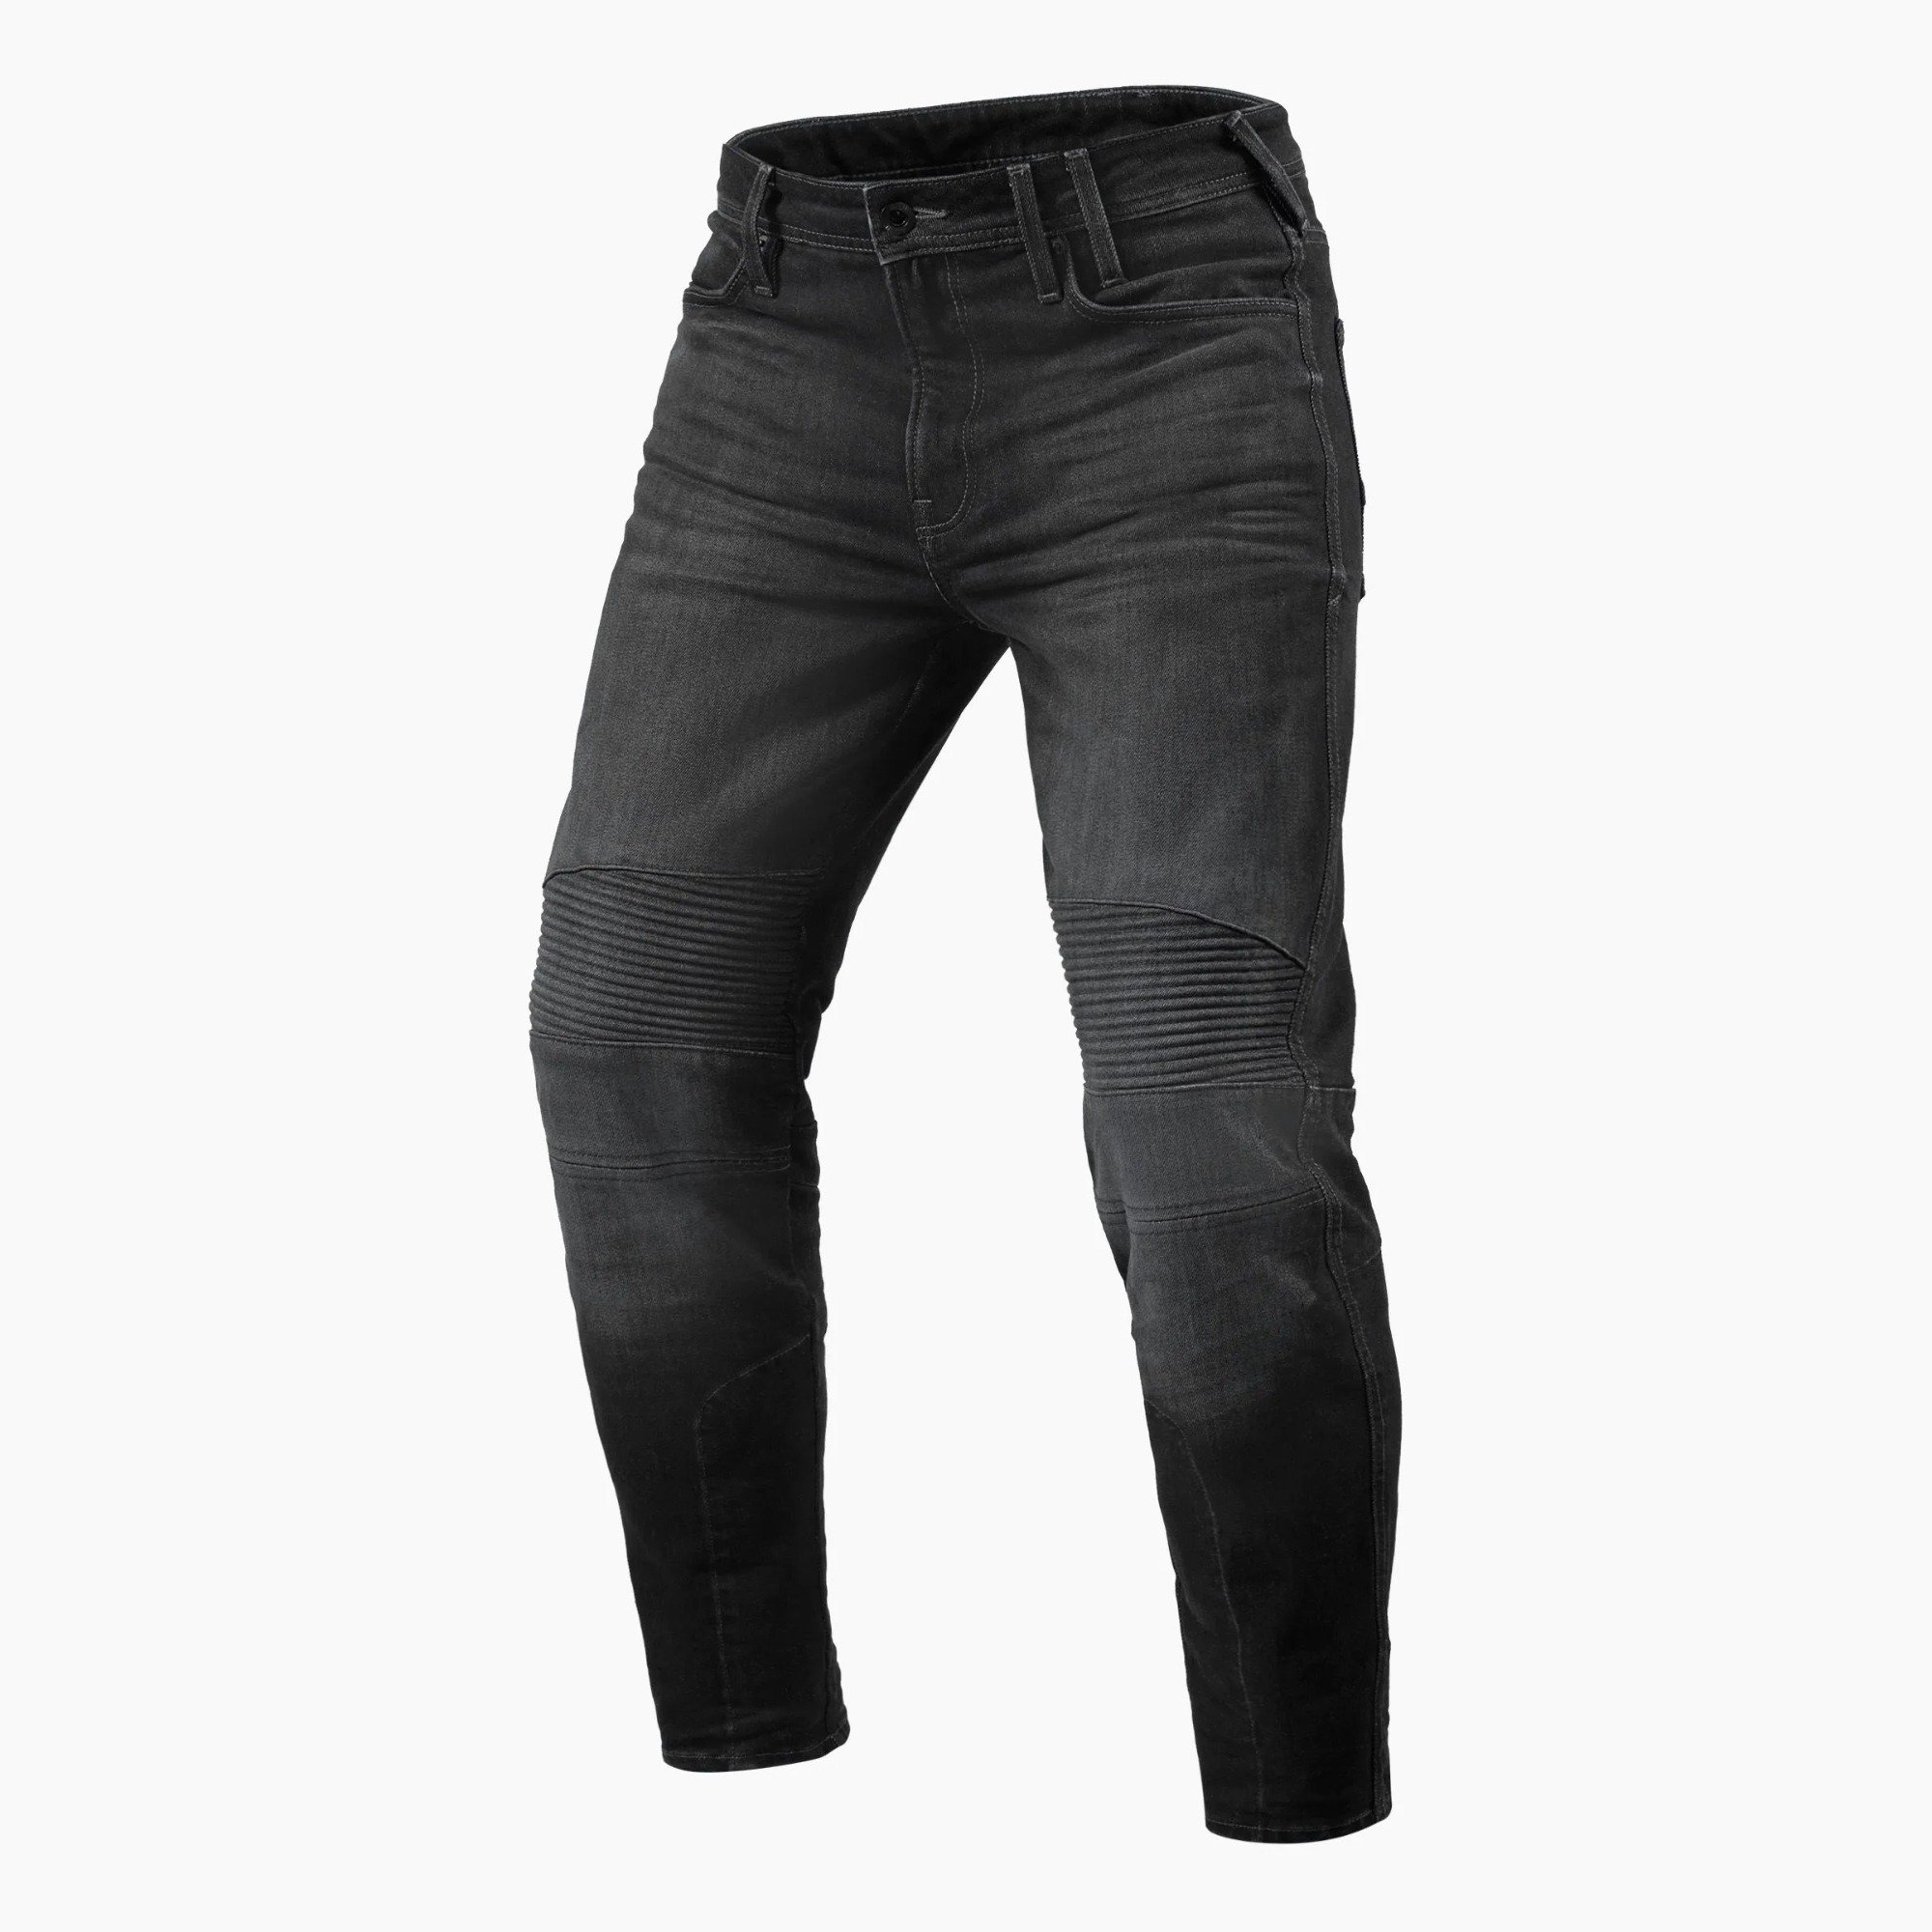 Image of REV'IT! Jeans Moto 2 TF Dark Grey Used Motorcycle Jeans Size L36/W30 EN